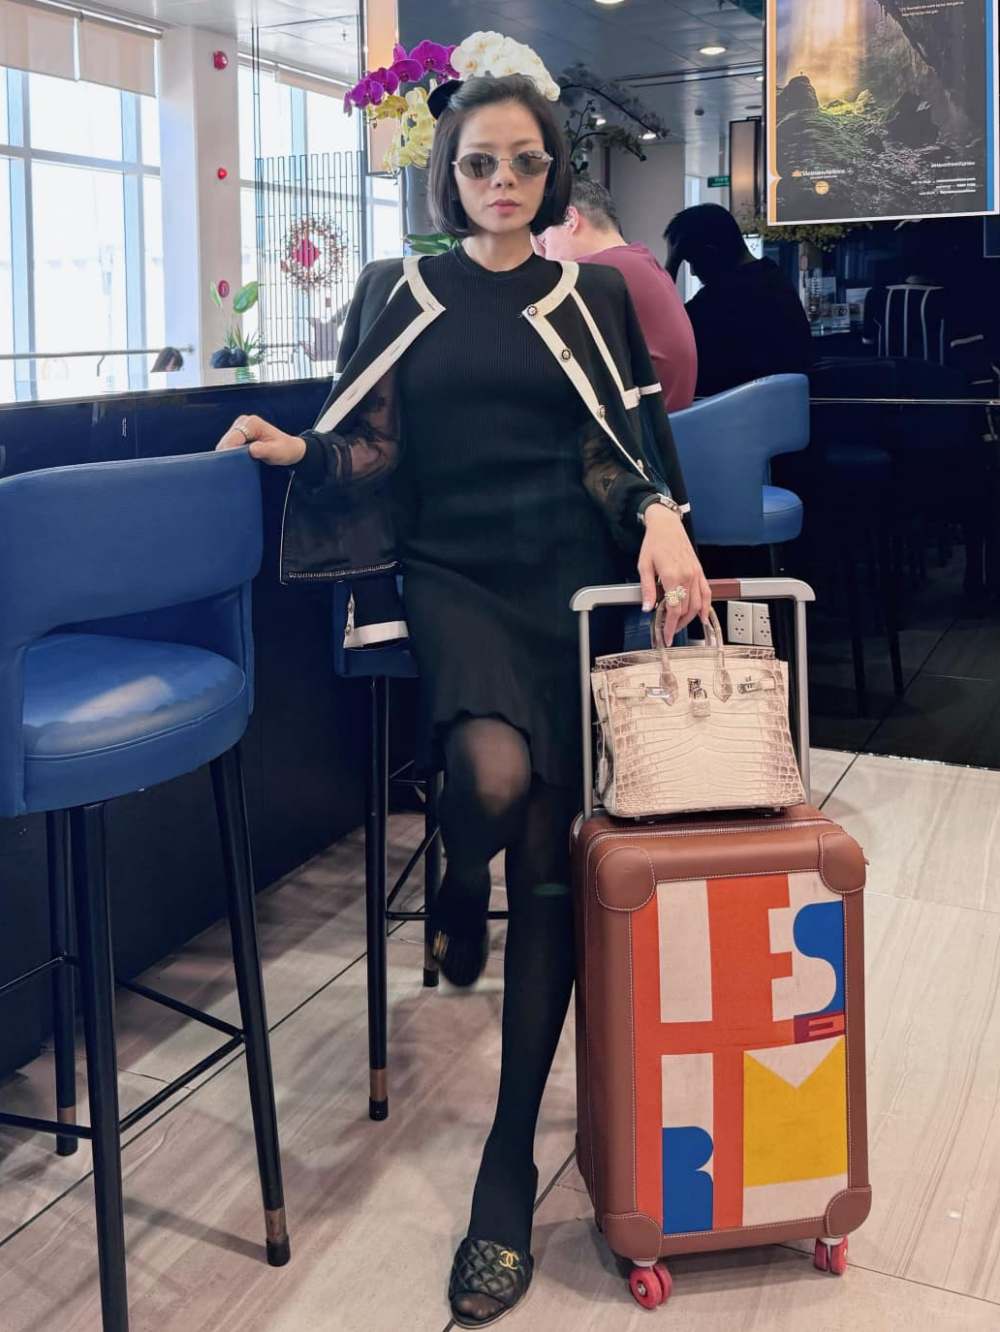 Sau khi đón Tết ở Sài Gòn, Lệ Quyên đã bay về Hà Nội ăn Tết cùng mẹ. Nữ ca sĩ gây choáng bởi thời trang đắt đỏ. Cô đeo chiếc túi Hermes bạch tạng chỉ sản xuất với số lượng giới hạn trên toàn thế giới, có giá khoảng gần 2 tỉ đồng. “Nữ hoàng phòng trà” chọn mặc trang phục và giày đến từ thương hiệu Chanel. Ảnh: Facebook nhân vật. 